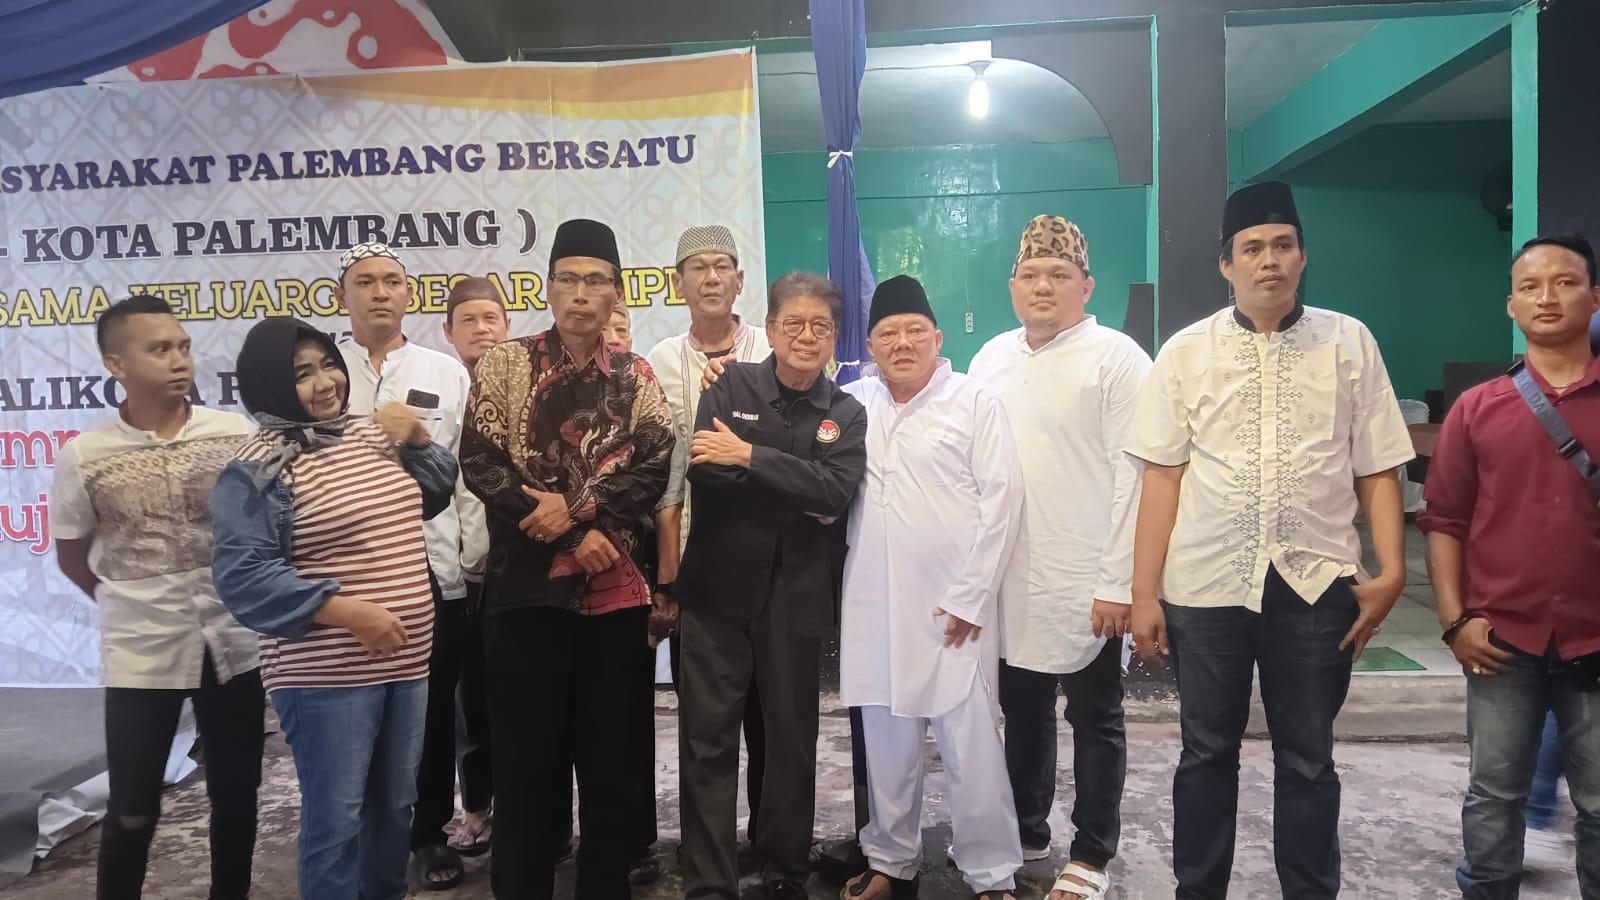 Buka bersama Paguyuban Masyarakat Palembang Bersatu (PMPB) Dihadiri Oleh Tokoh Politik Sumsel